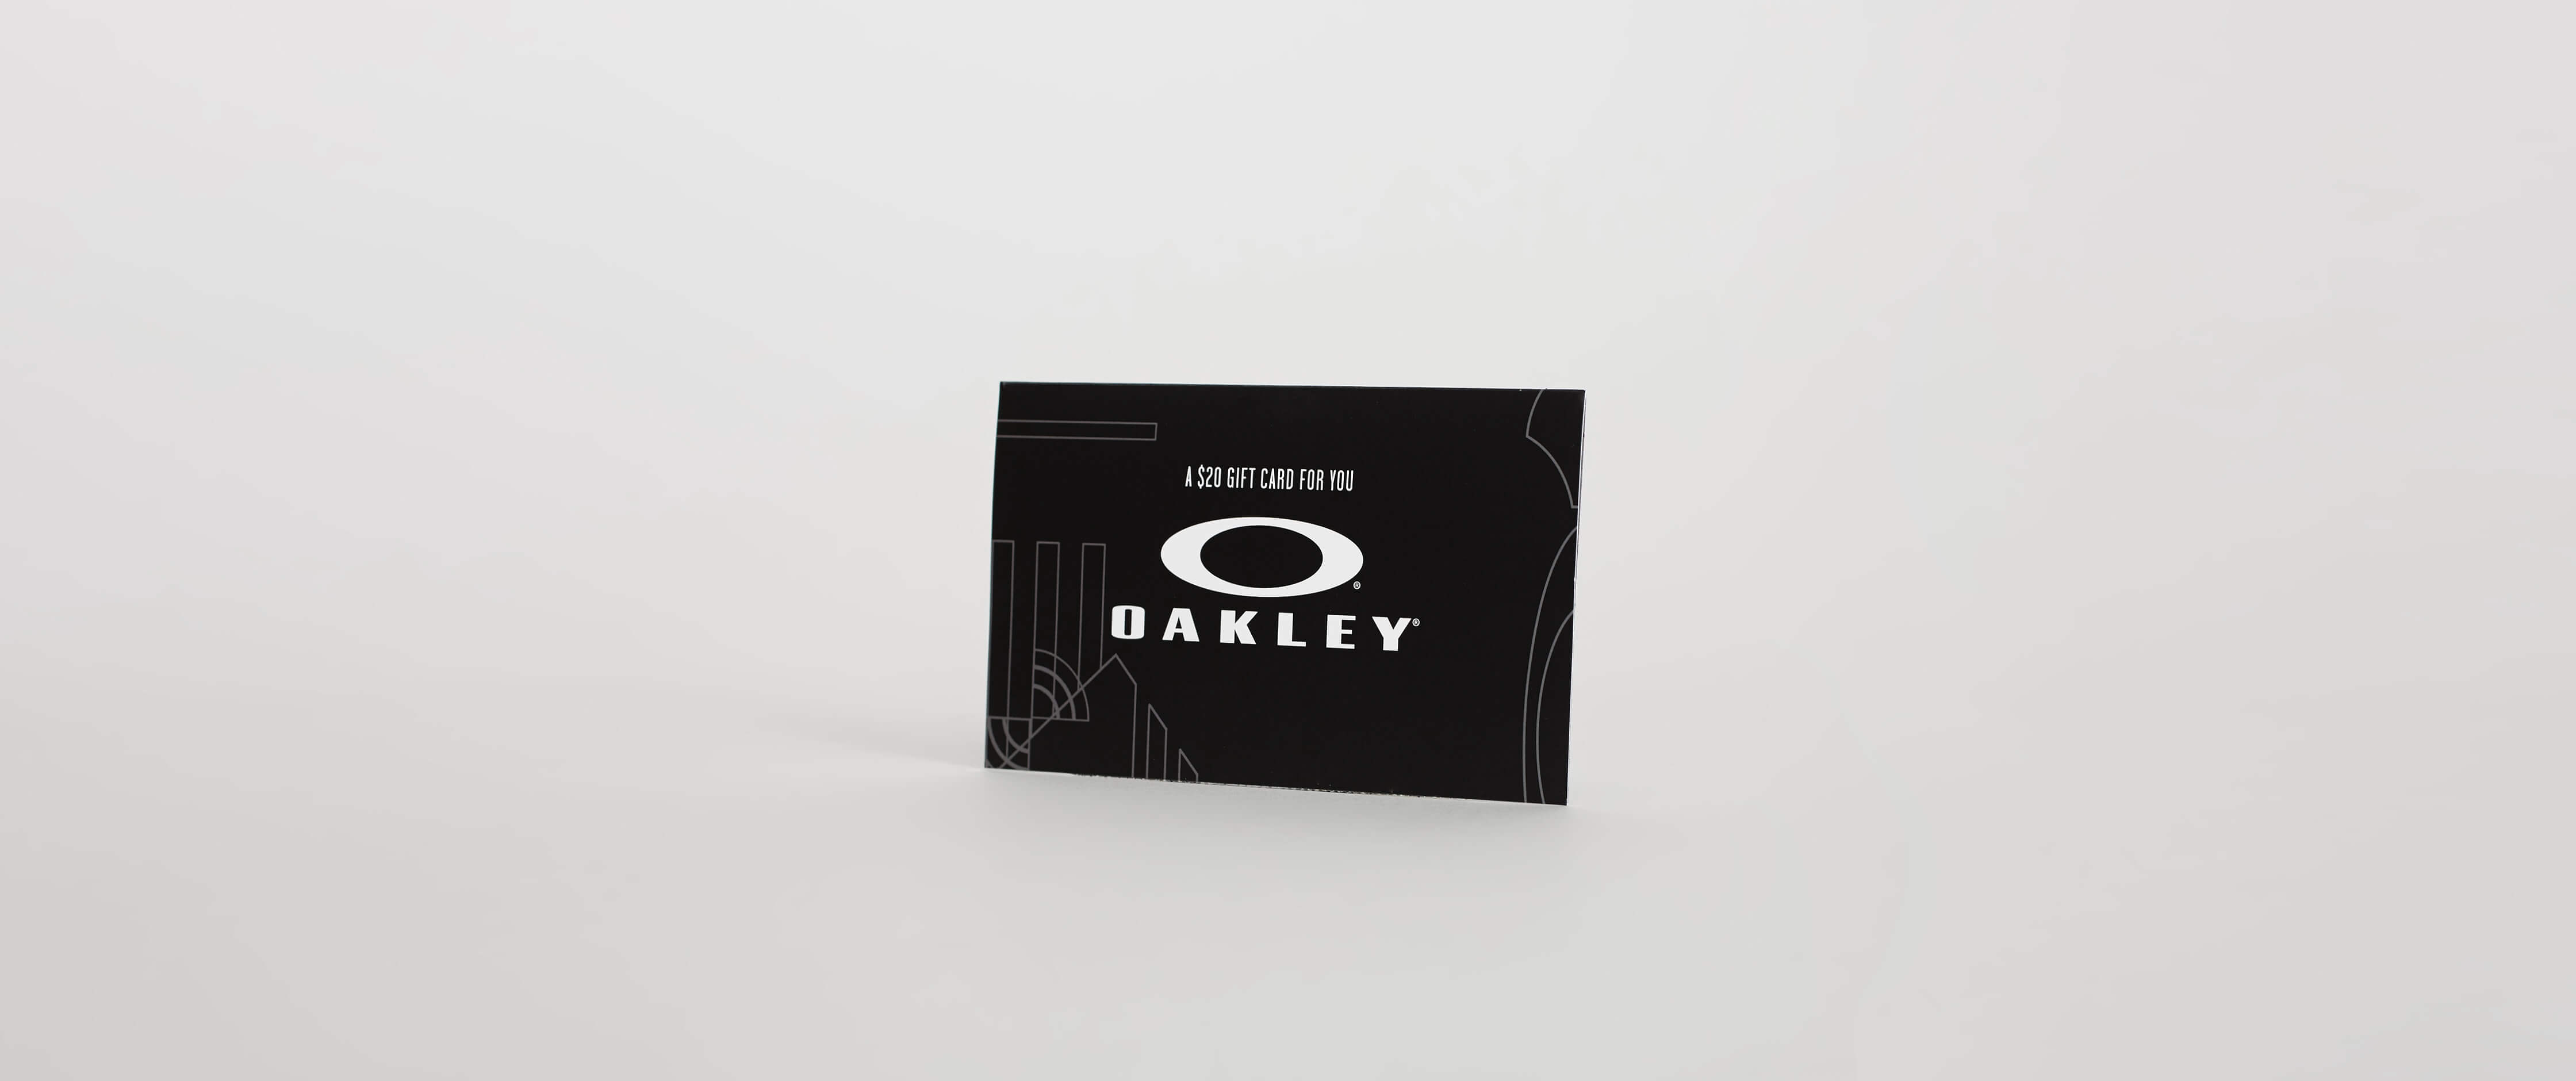 oakley gift card